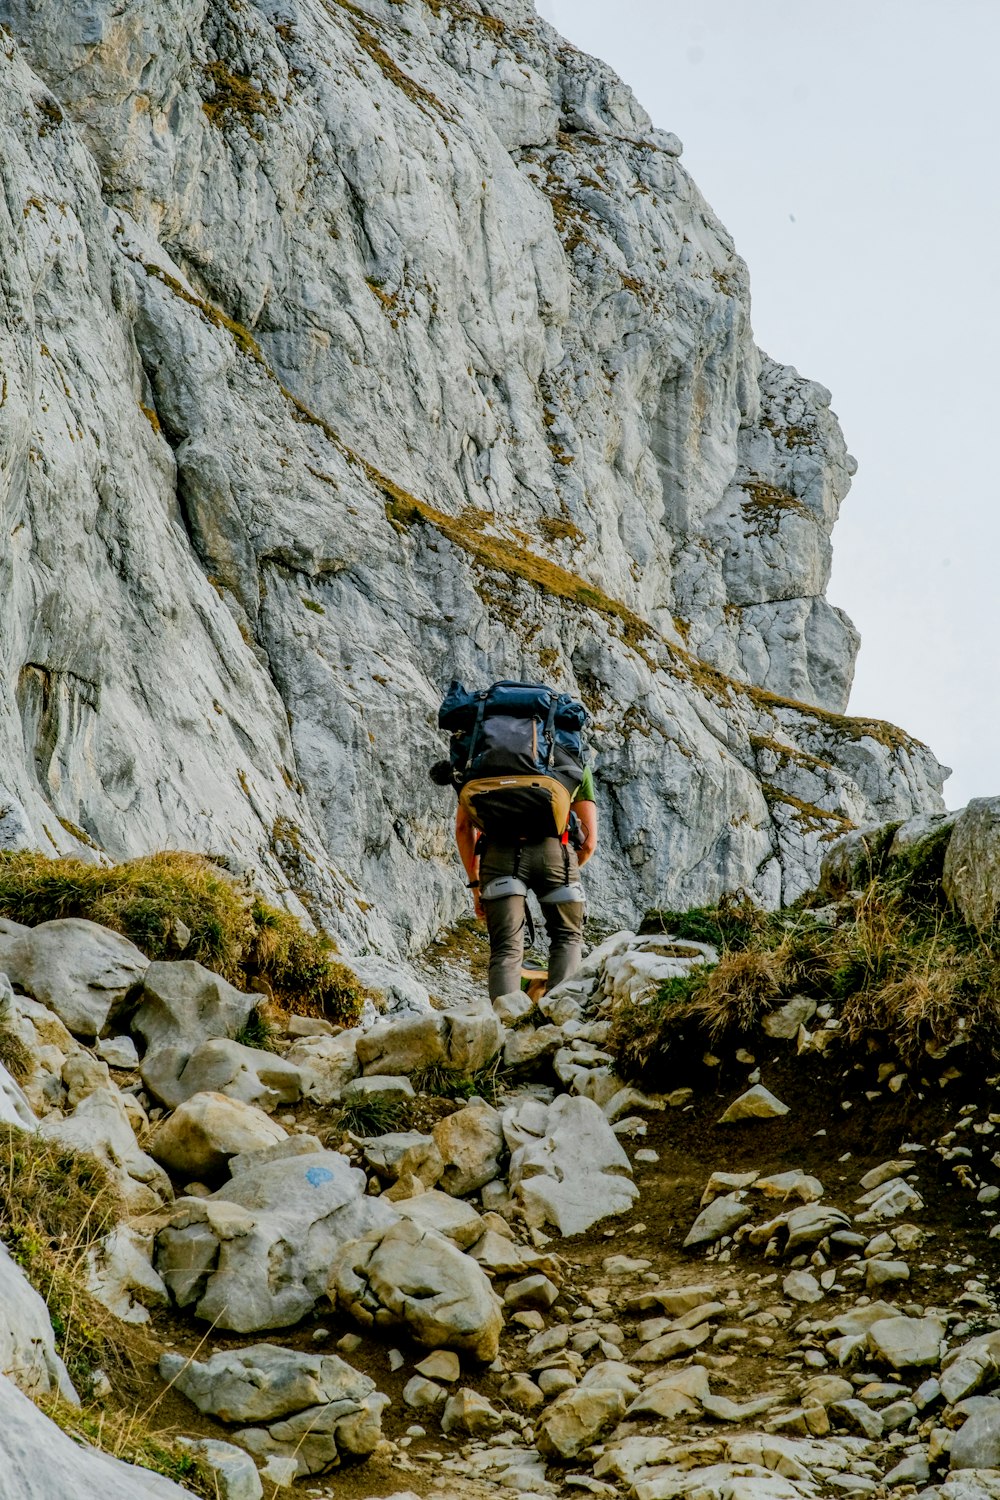 a person climbing a rocky mountain